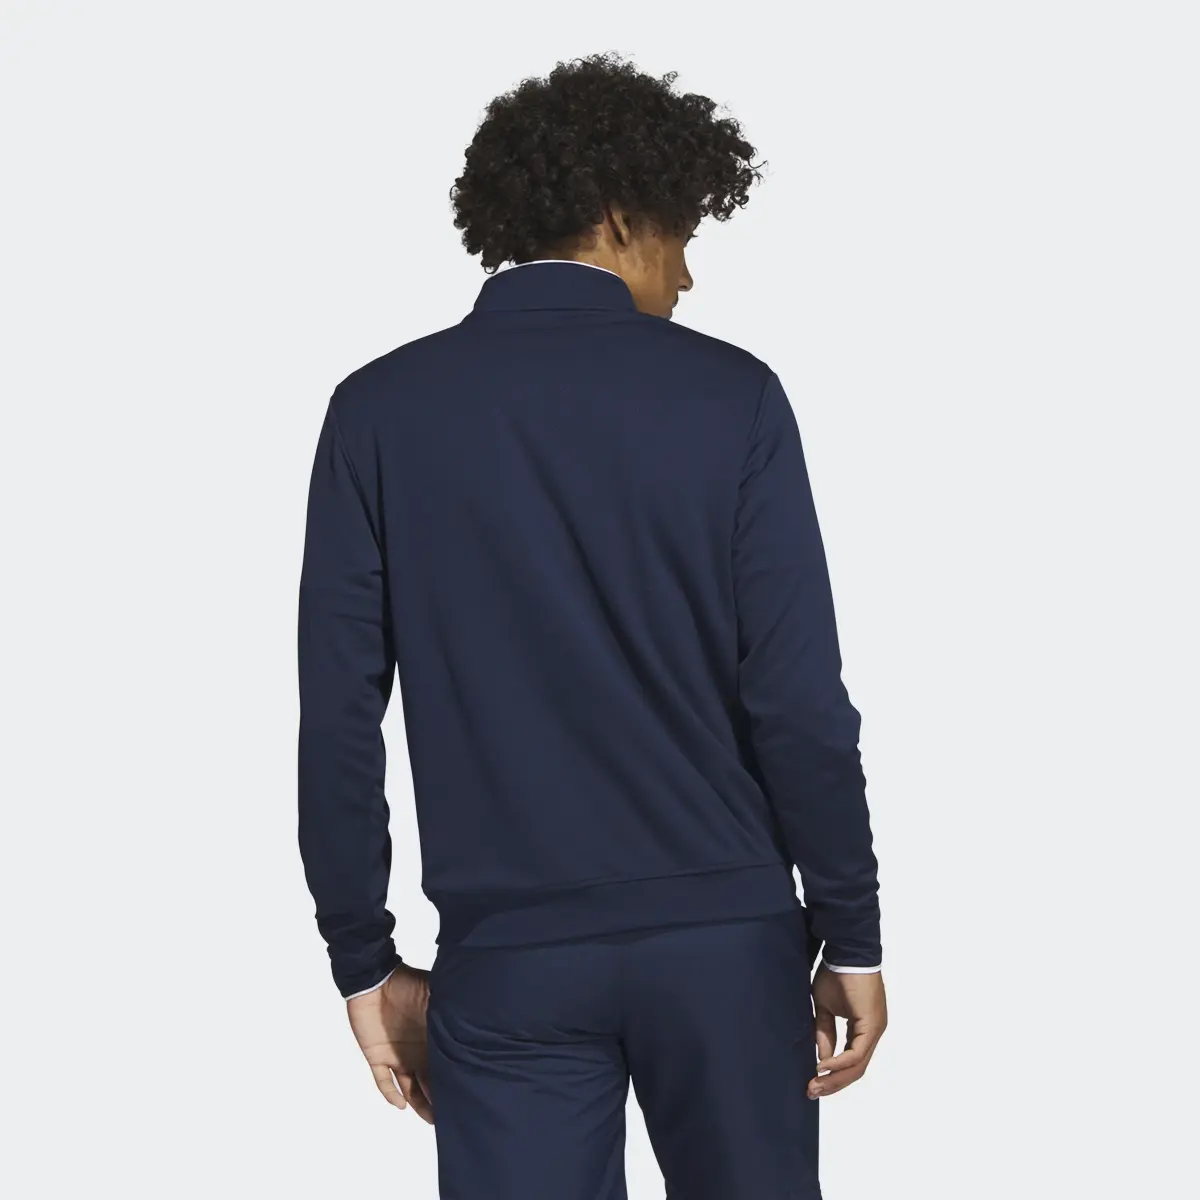 Adidas Quarter-Zip Sweatshirt. 3